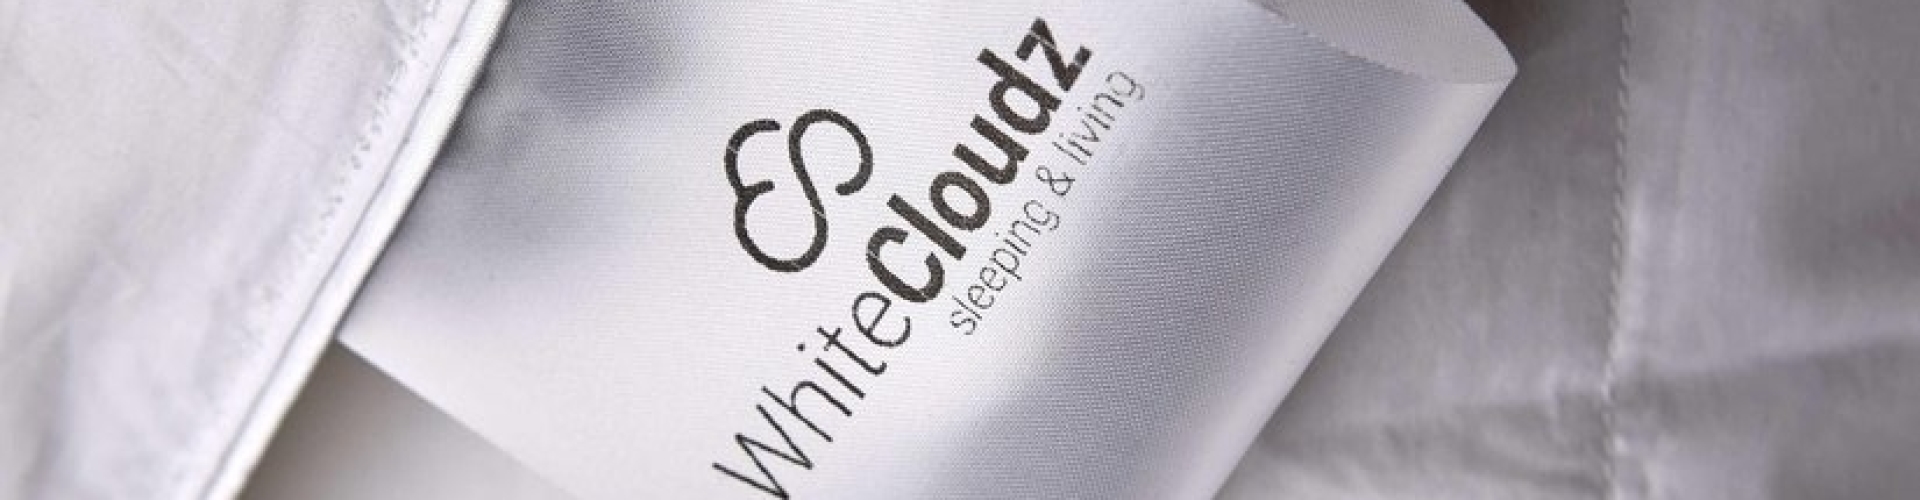 whitecloudz.nl review